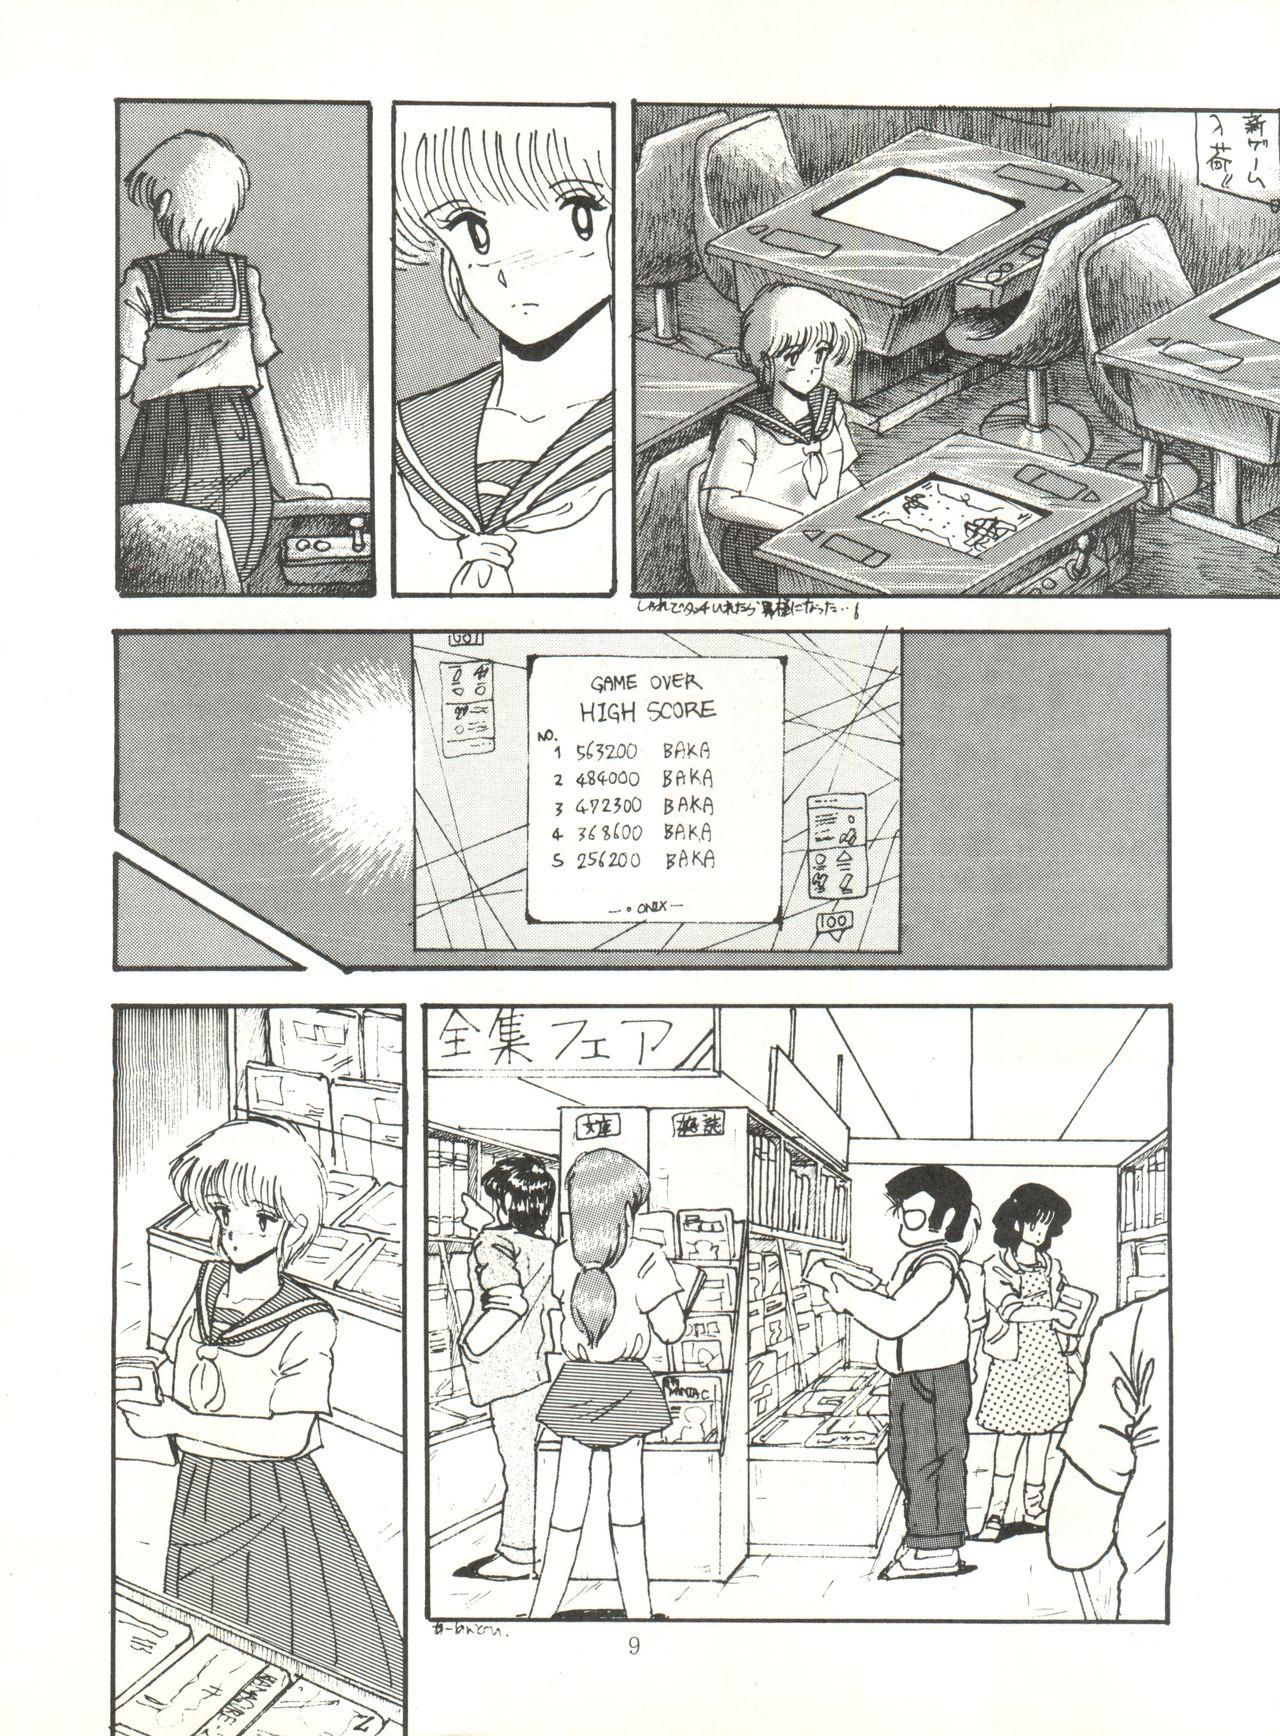 Storyline [ABC Kikaku (Akihabara Nobuyoshi, Matsutake-kun,Nase Tomohide)] K-I-M-A-G-U-R-E 2 (Kimagure Orange Road) - Kimagure orange road Grosso - Page 8